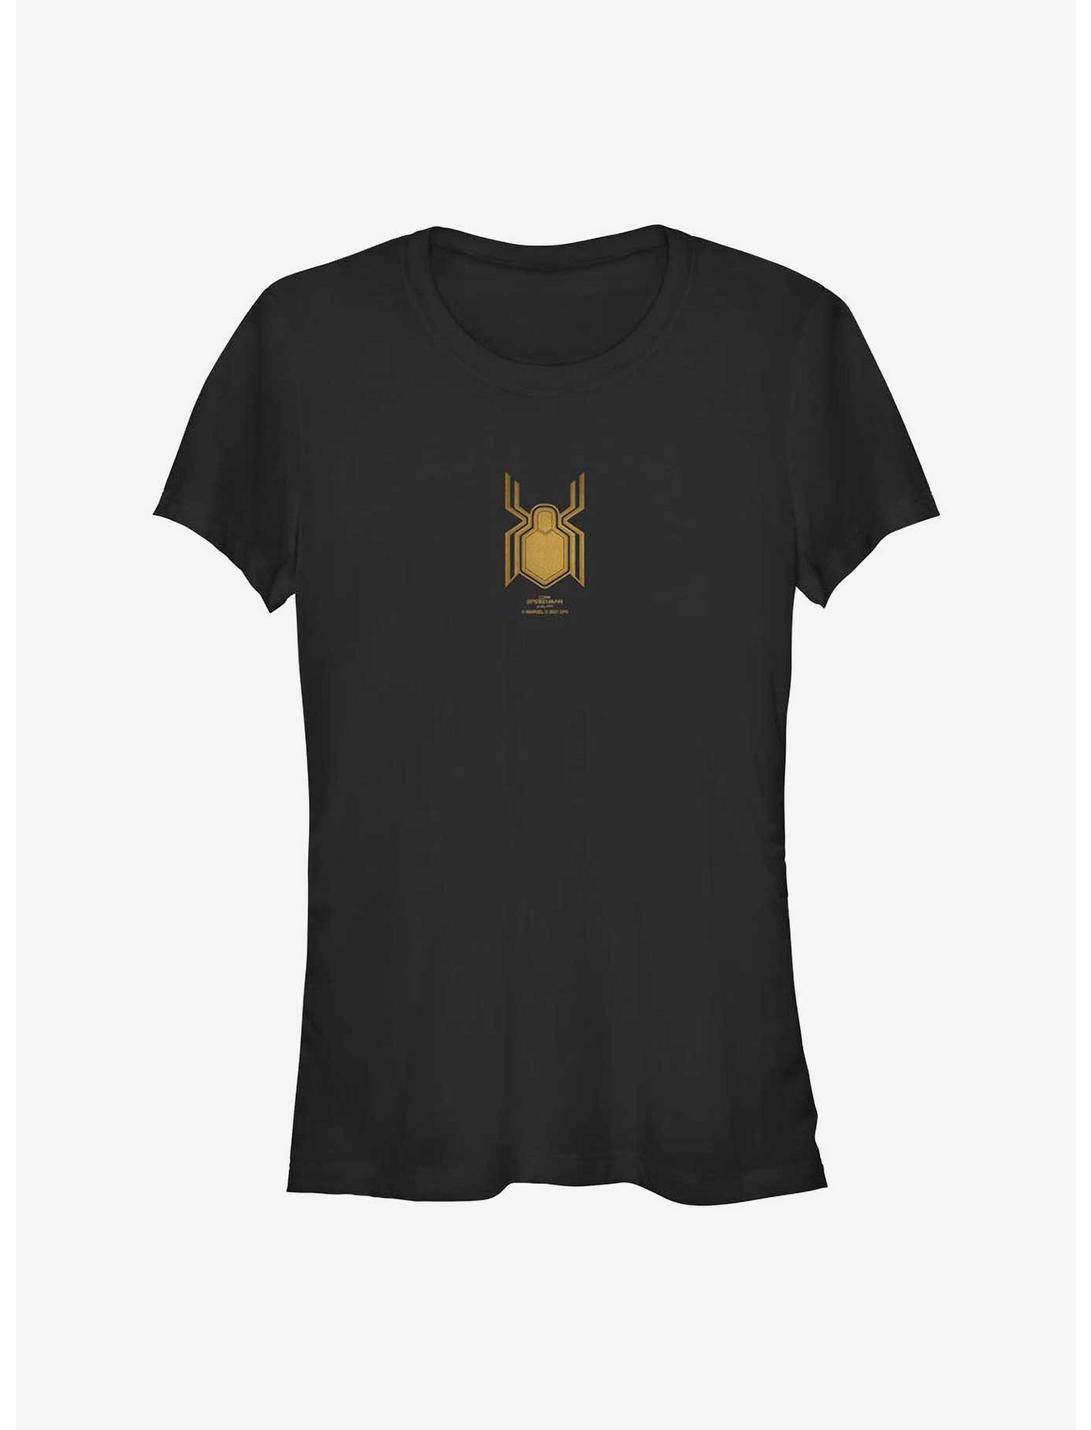 Marvel Spider-Man: No Way Home Black Suit Gold Logo Girls T-Shirt, BLACK, hi-res